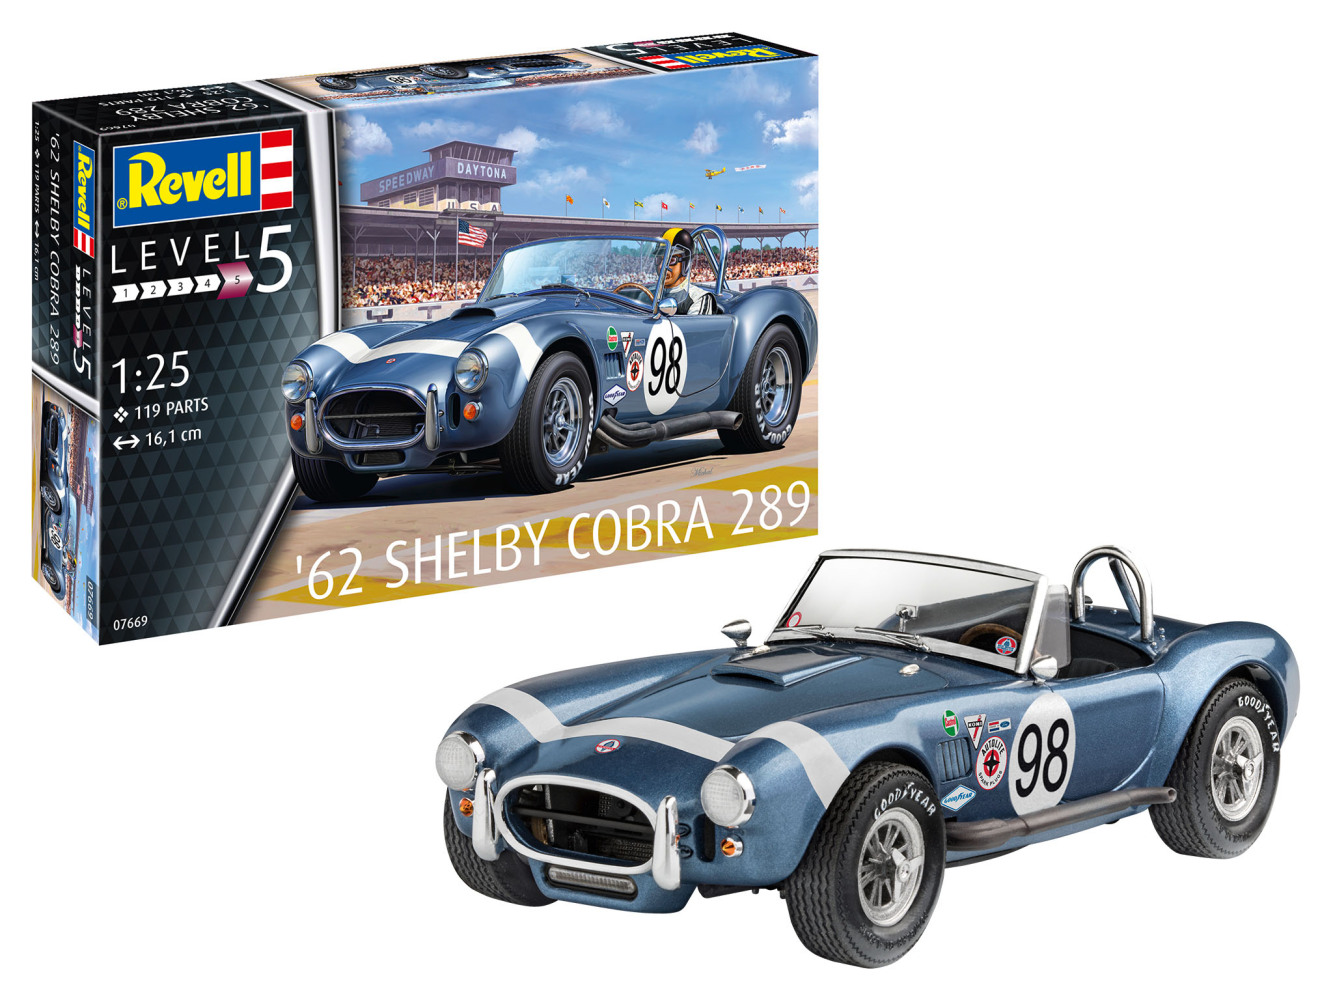 62 Shelby Cobra 289 Kit Set